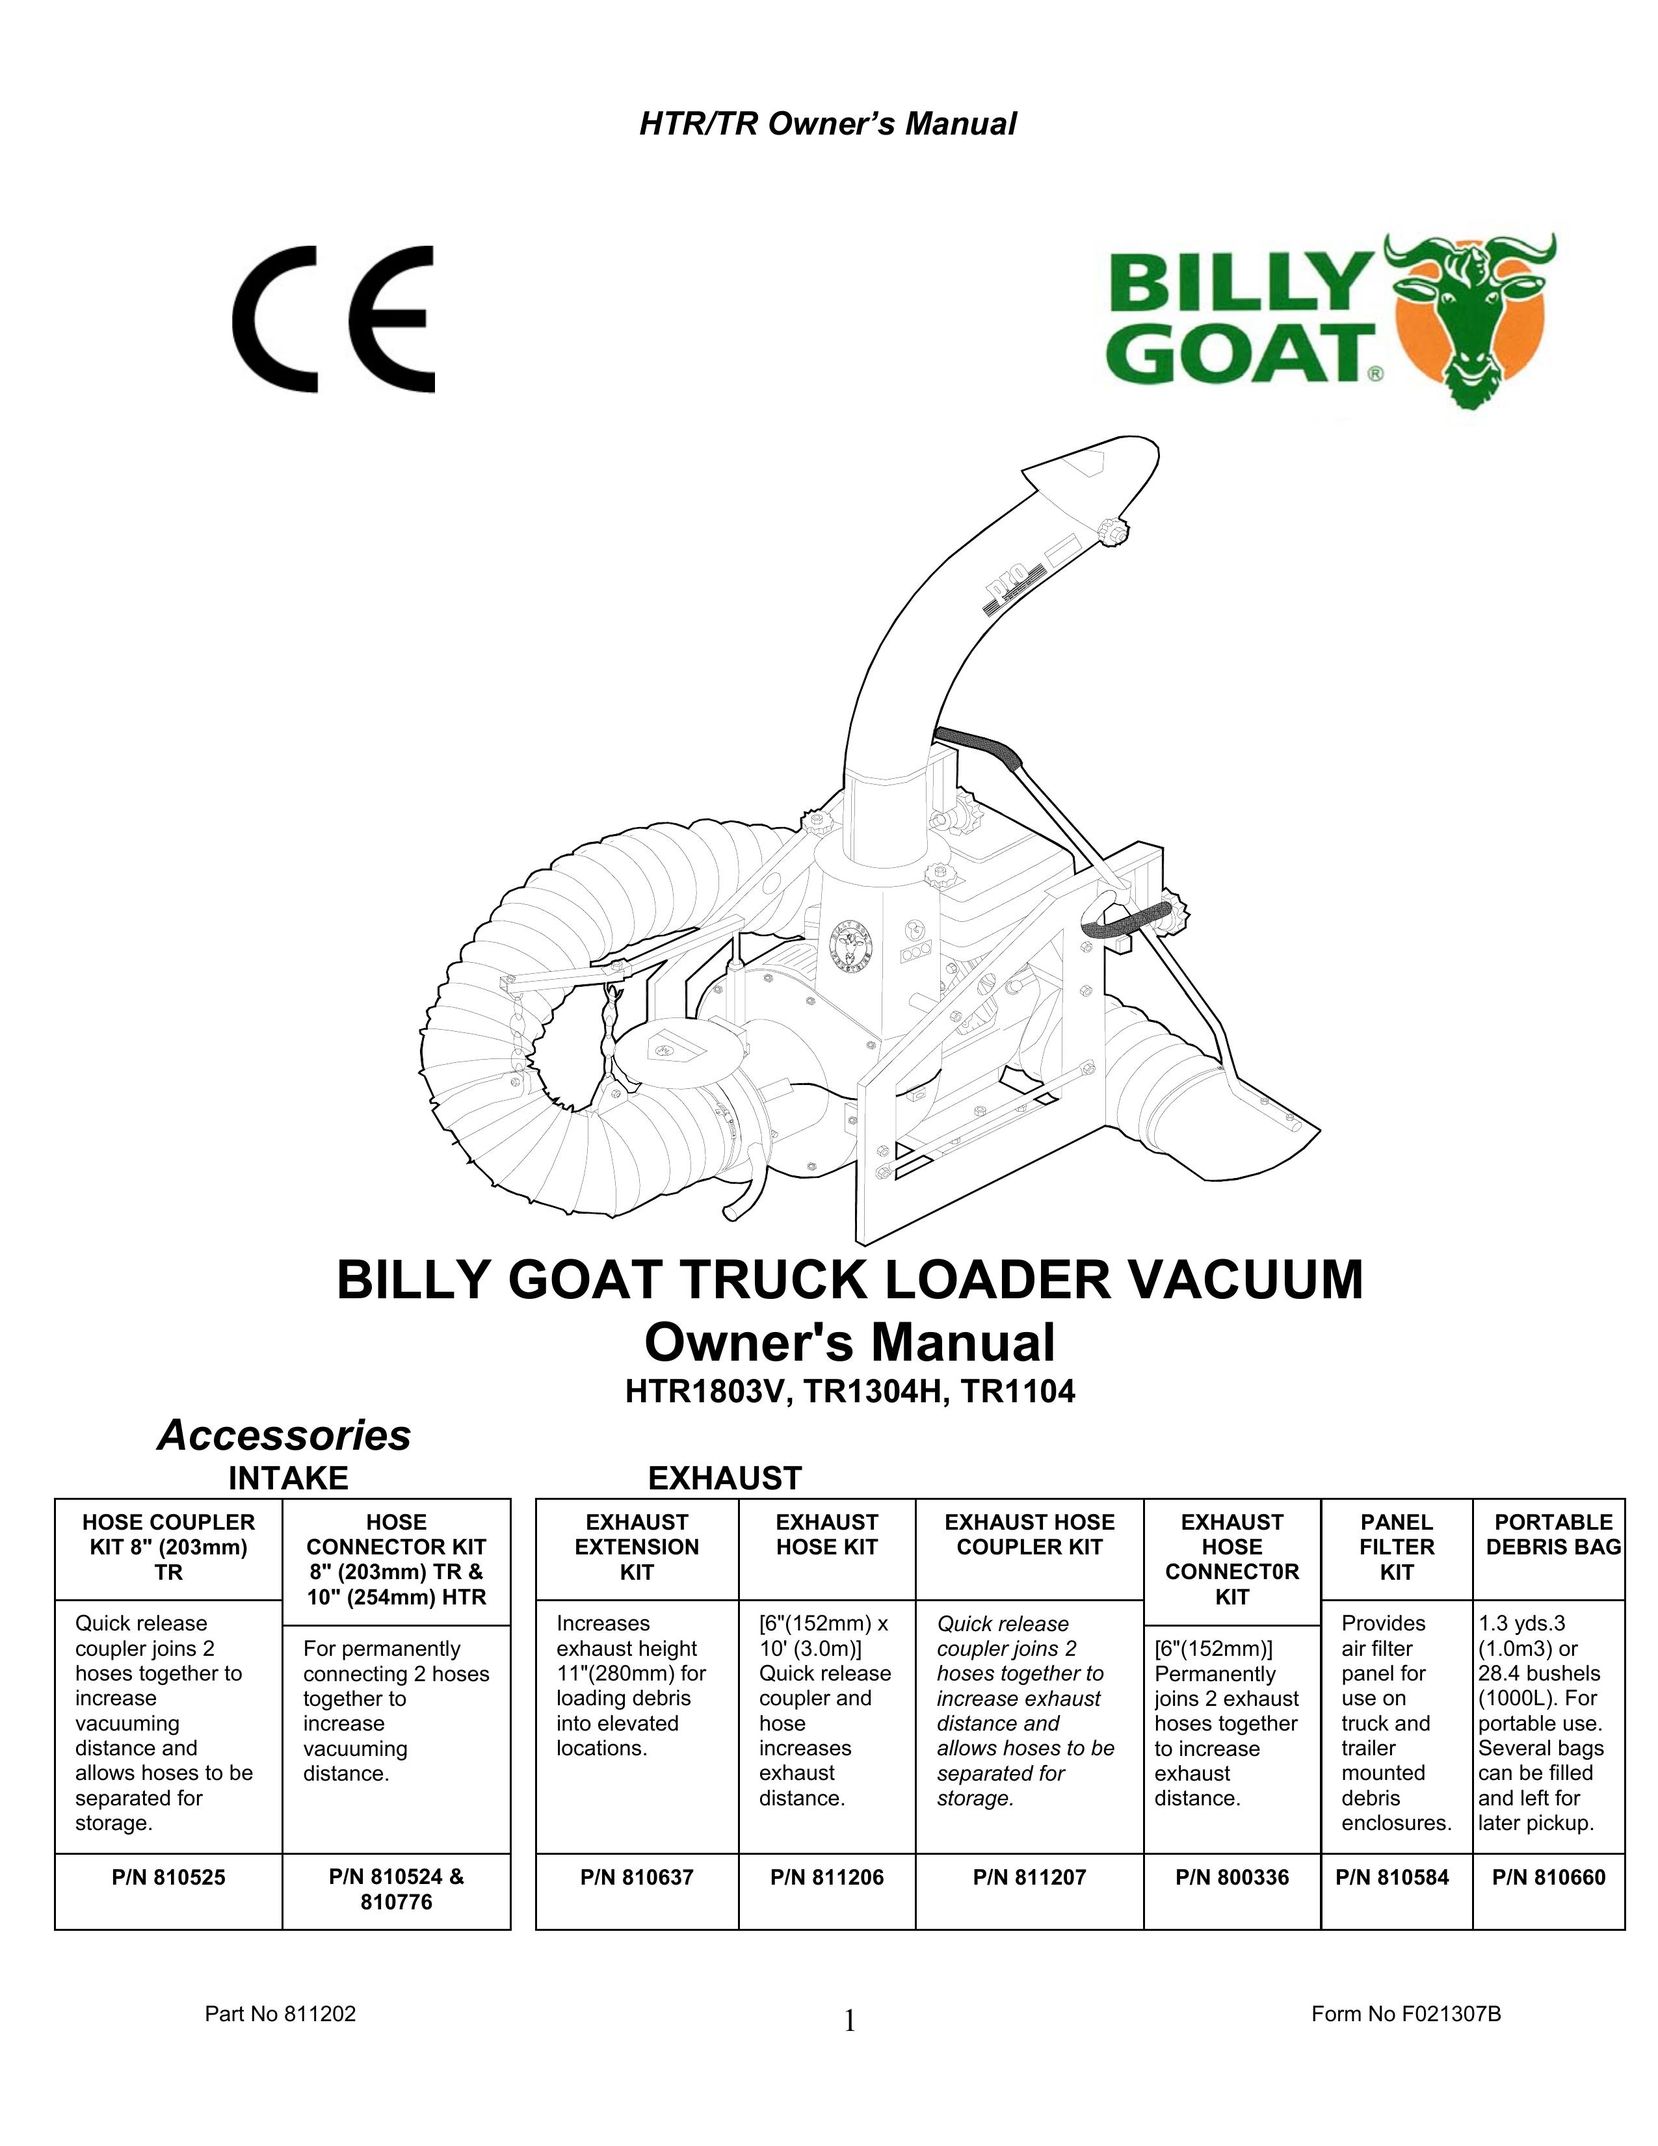 Billy Goat HTR1803V Vacuum Cleaner User Manual